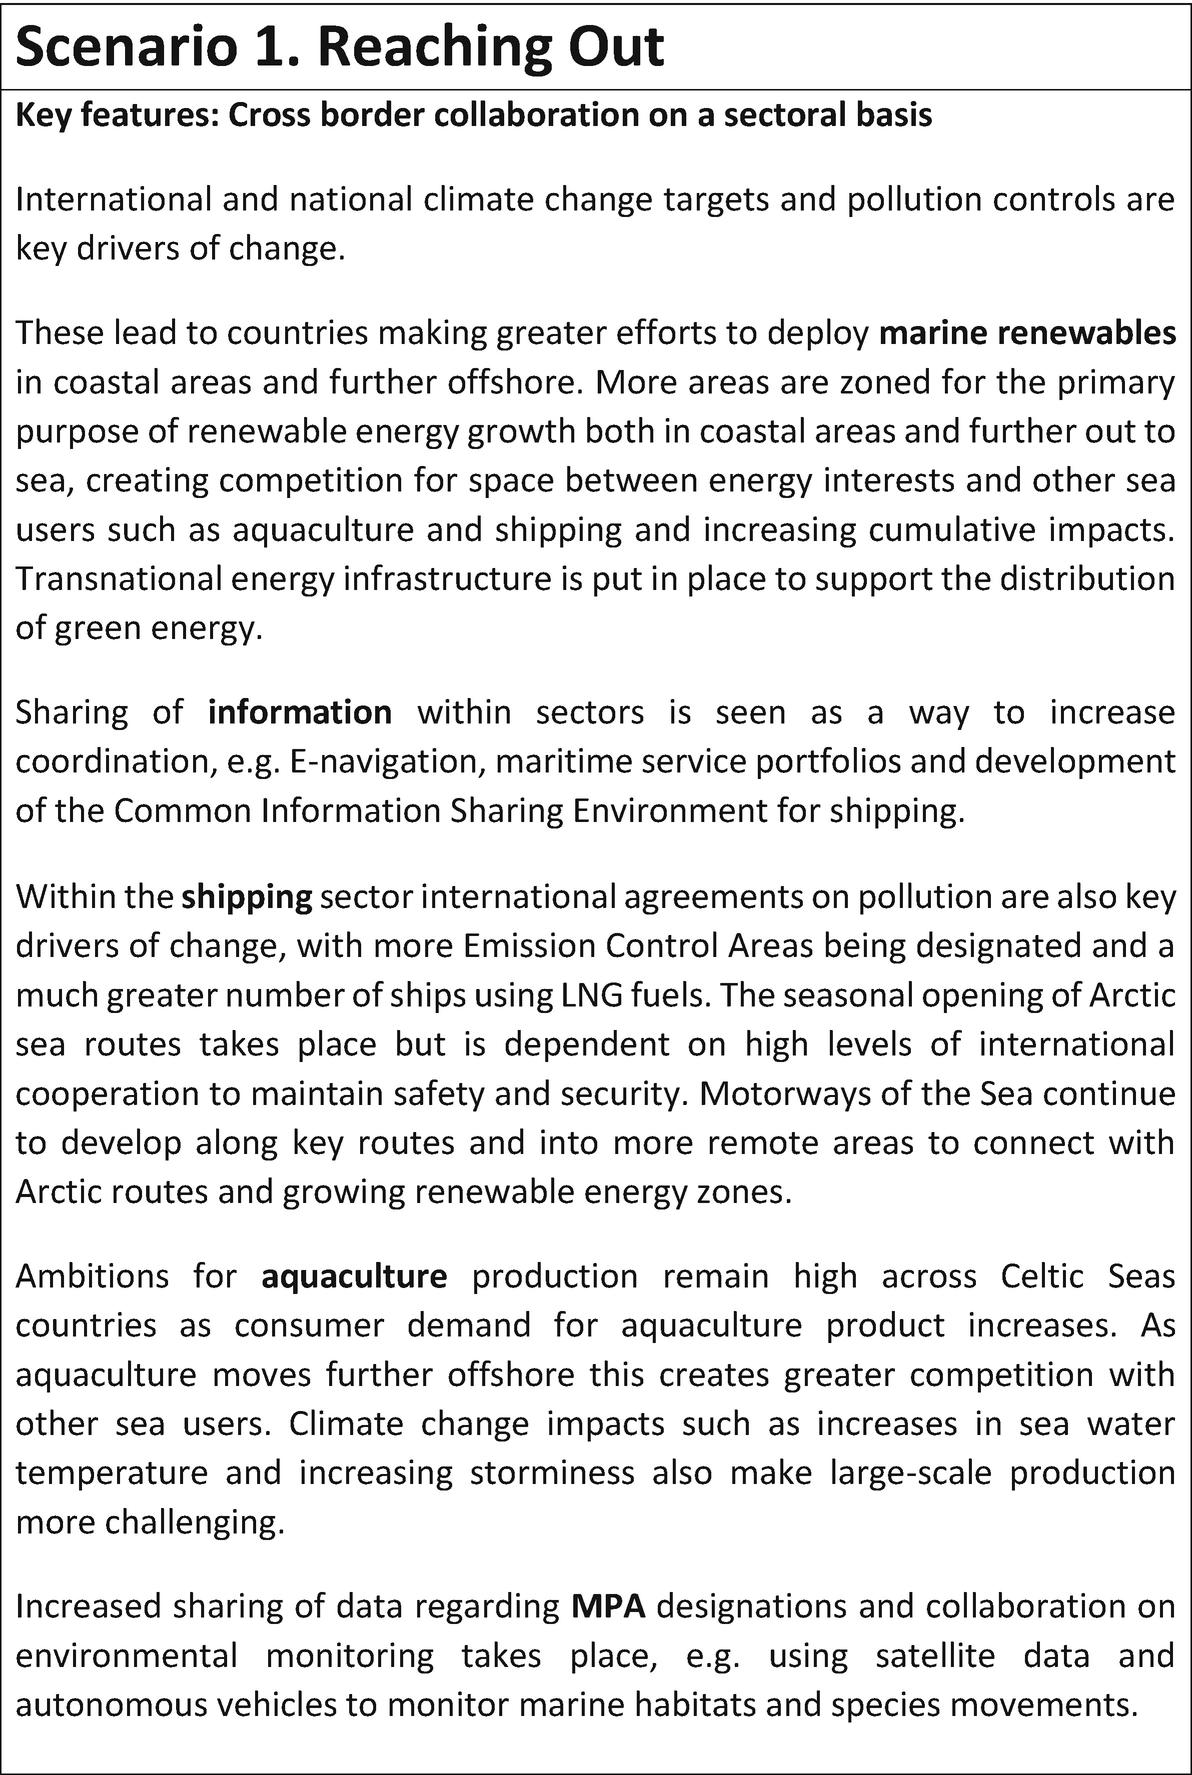 Scenario-Building for Marine Spatial Planning | SpringerLink